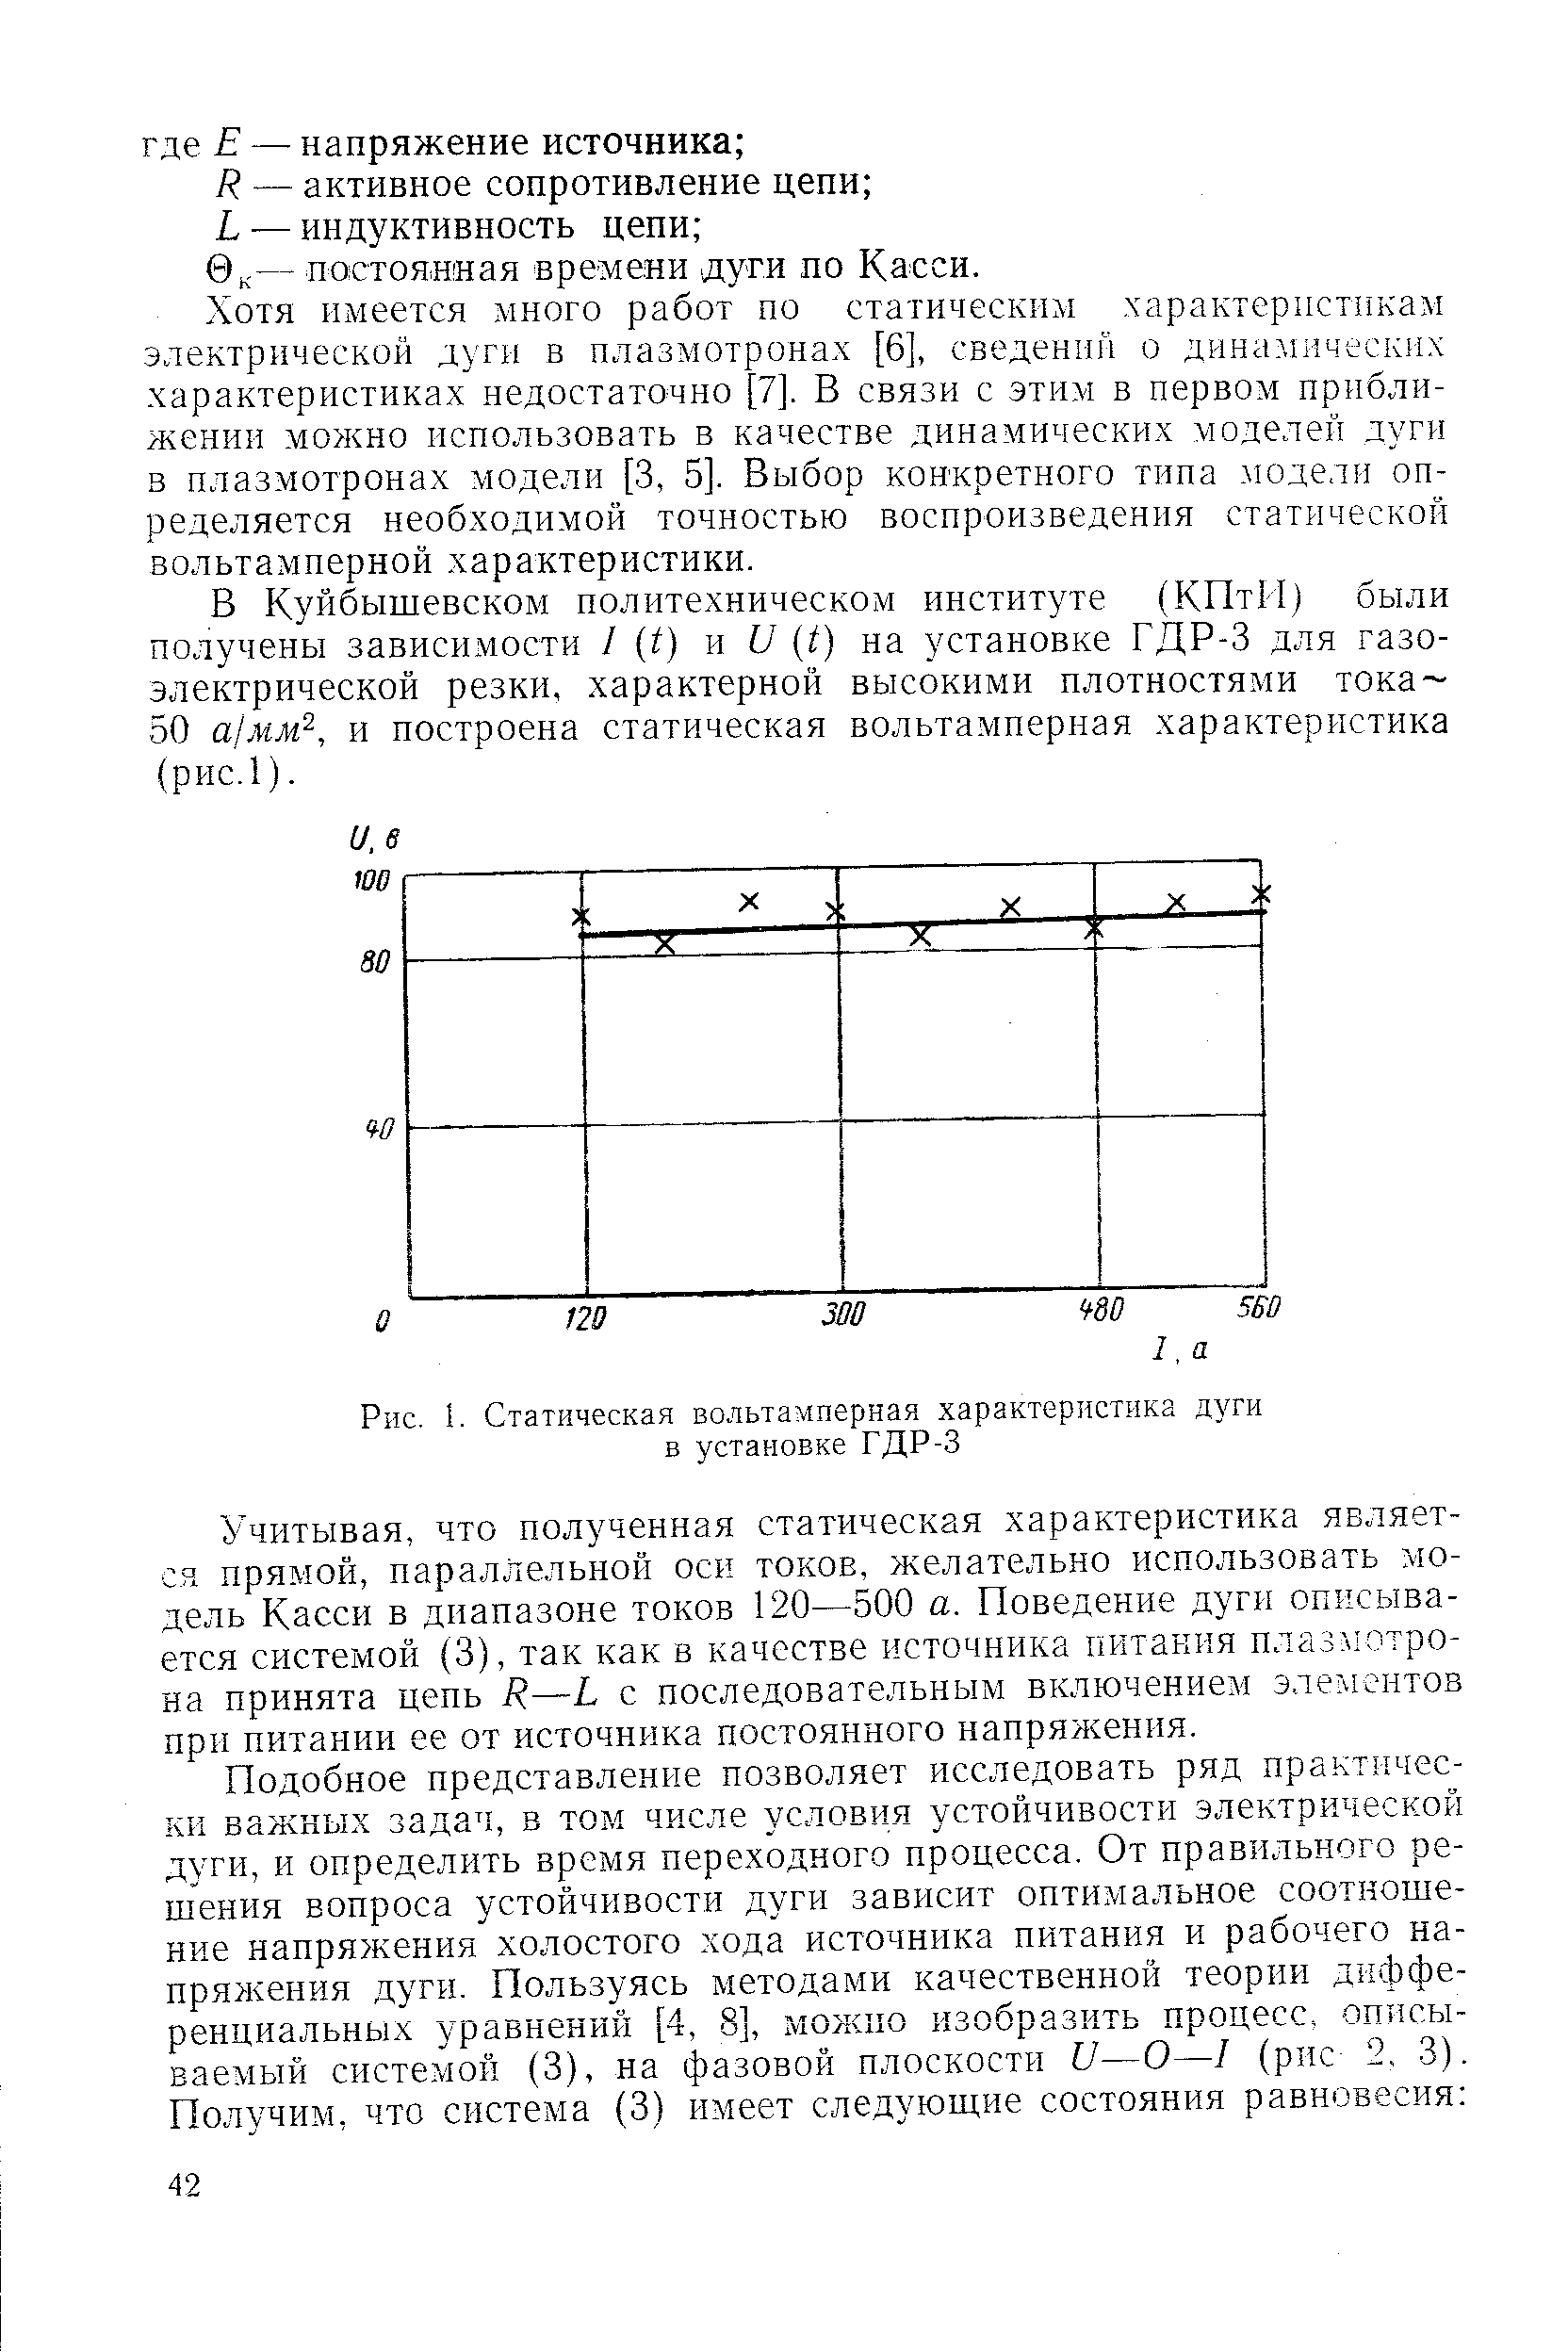 Рис. 1. Статическая вольтамперная характеристика дуги в установке ГДР-3
